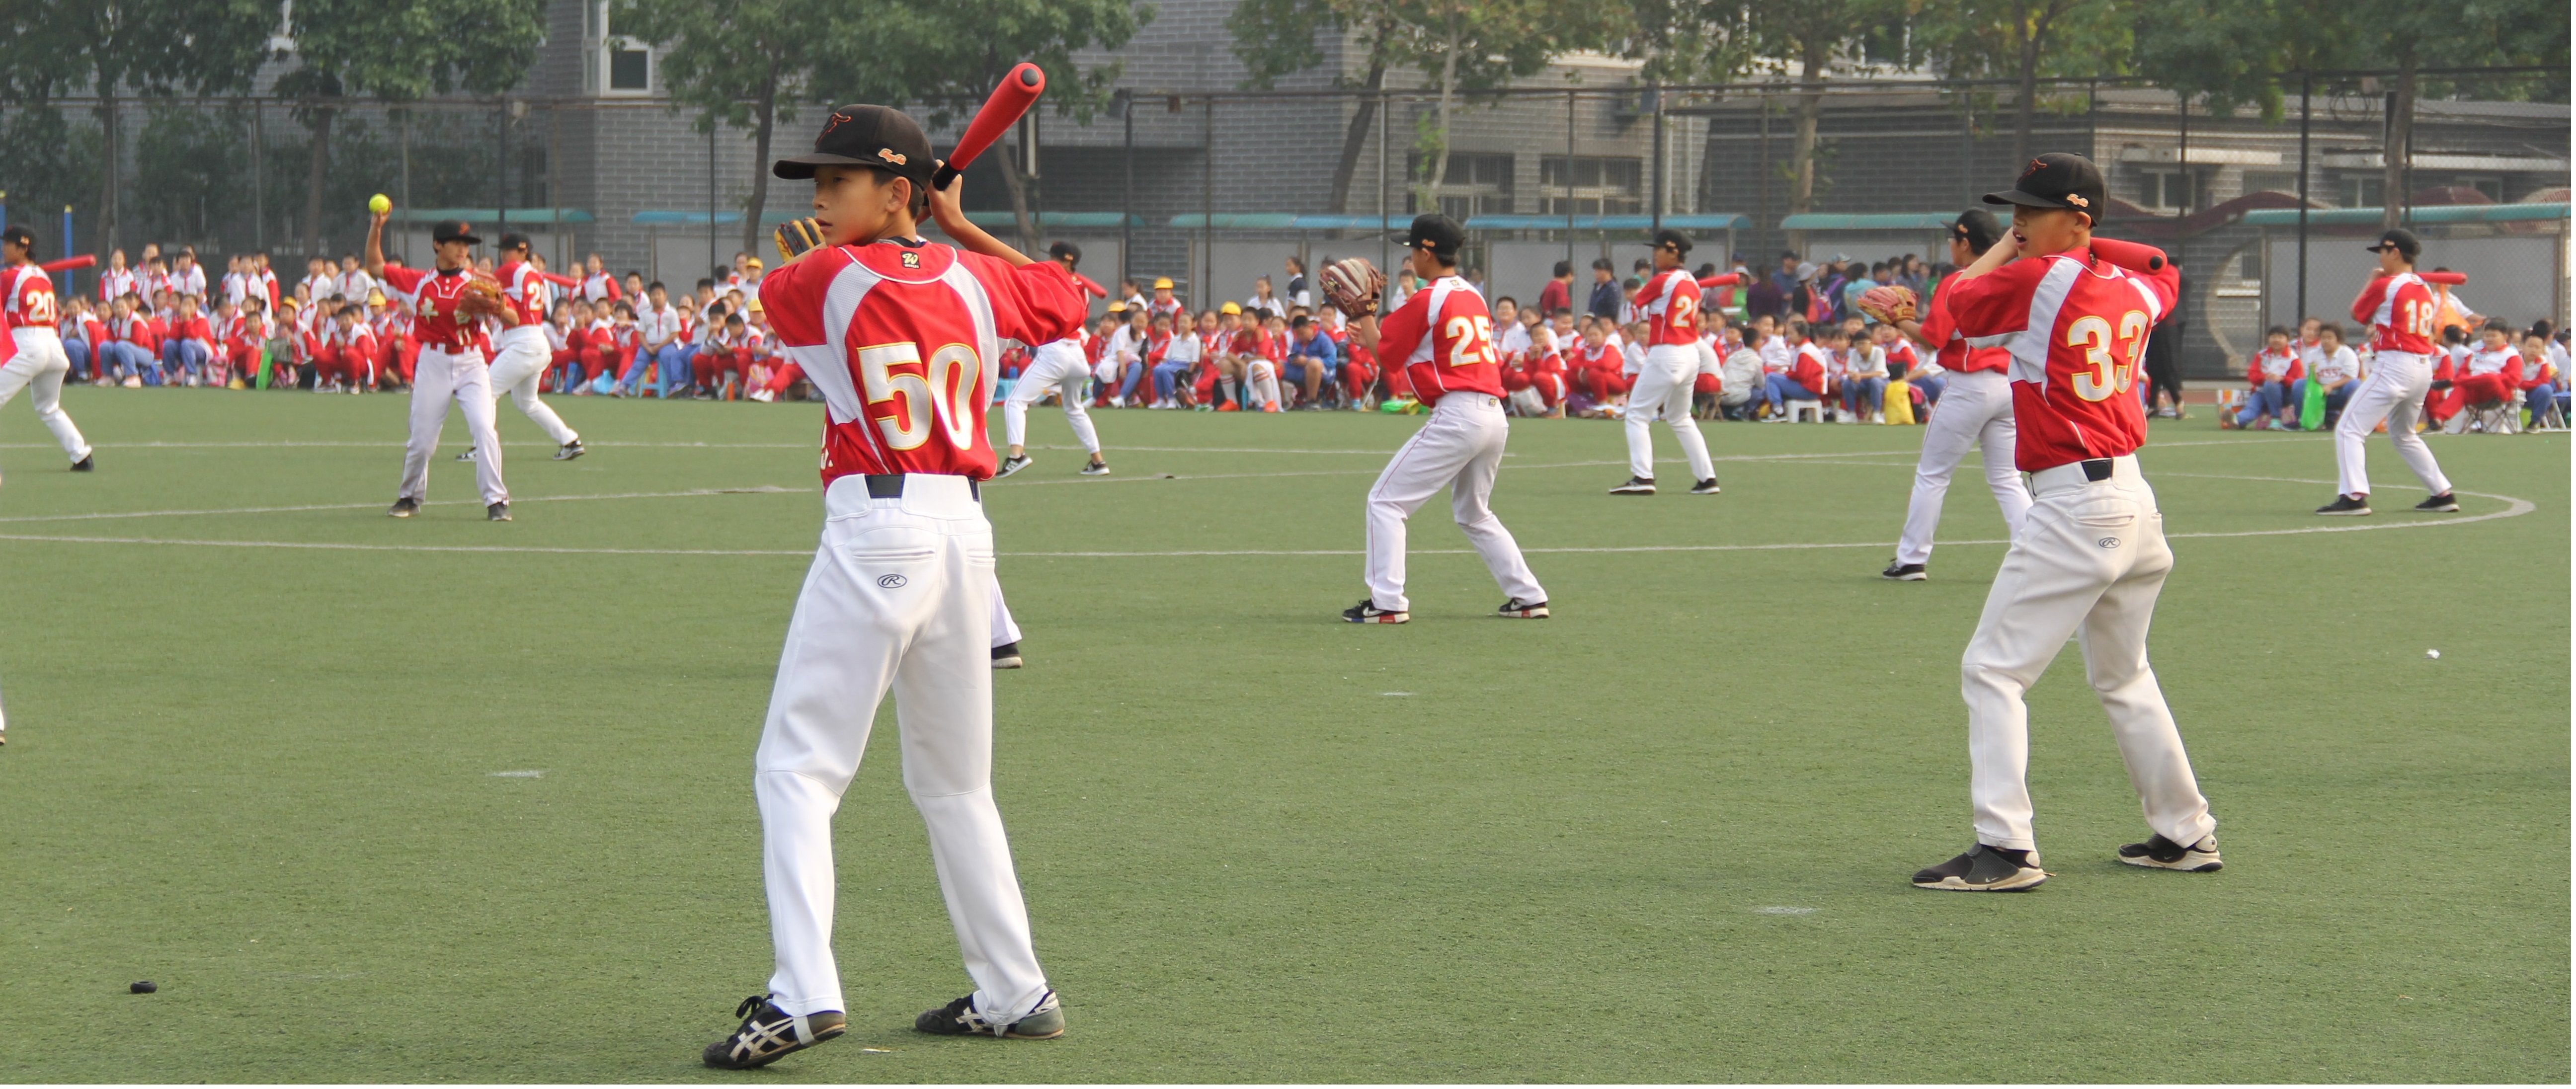 中国教育科学研究院丰台实验学校——棒球队